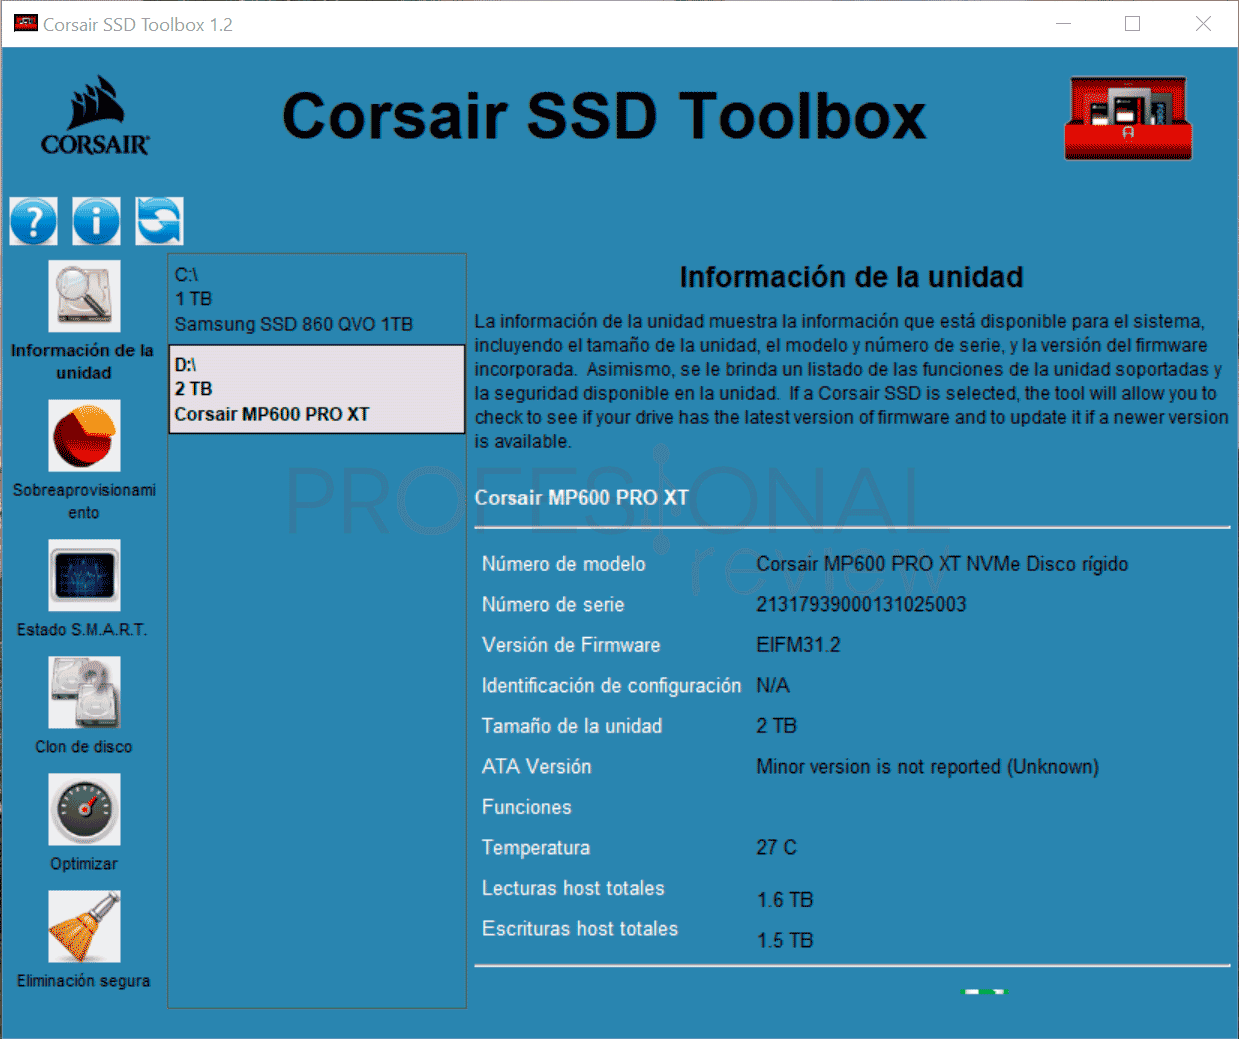 Corsair MP600 Pro XT Toolbox